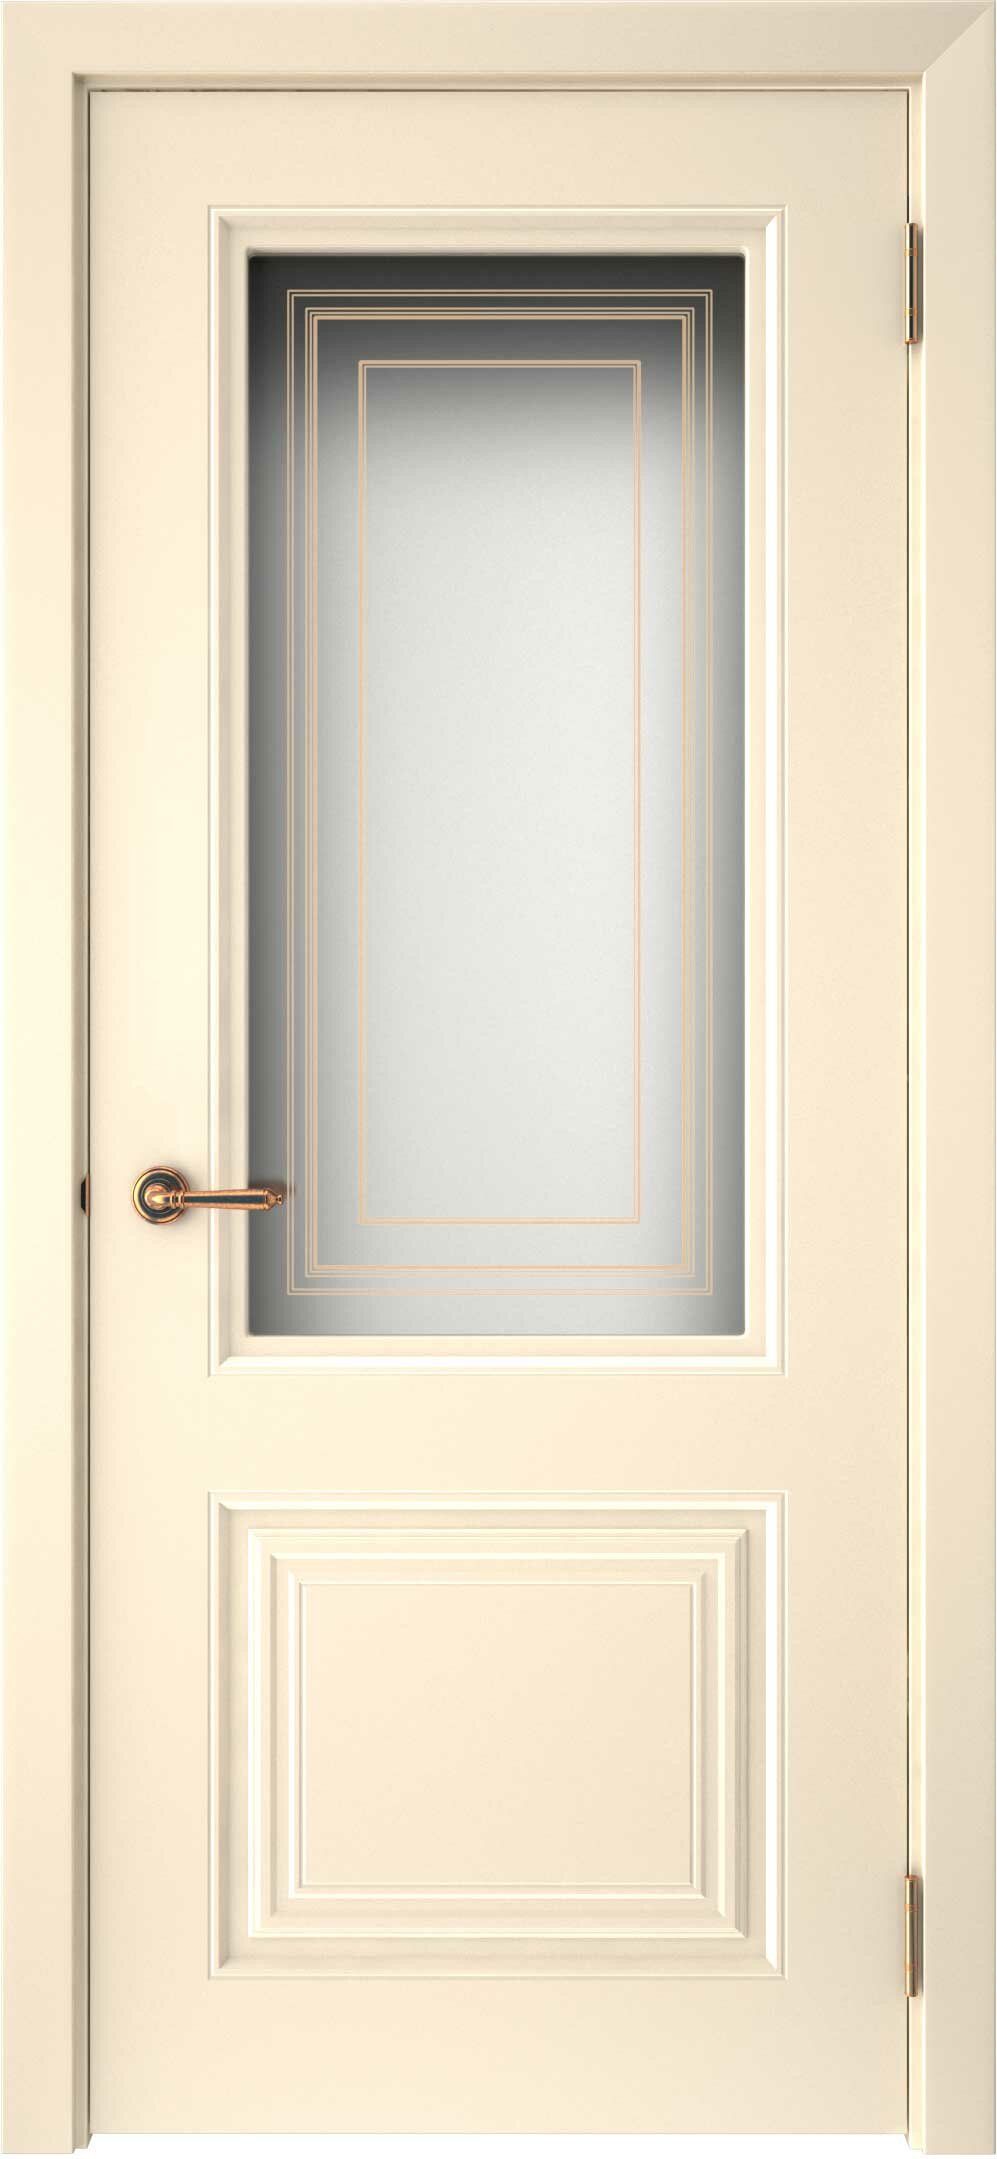 Ульяновские двери, Смальта 42 до, Ваниль 2000*700 (полотно)